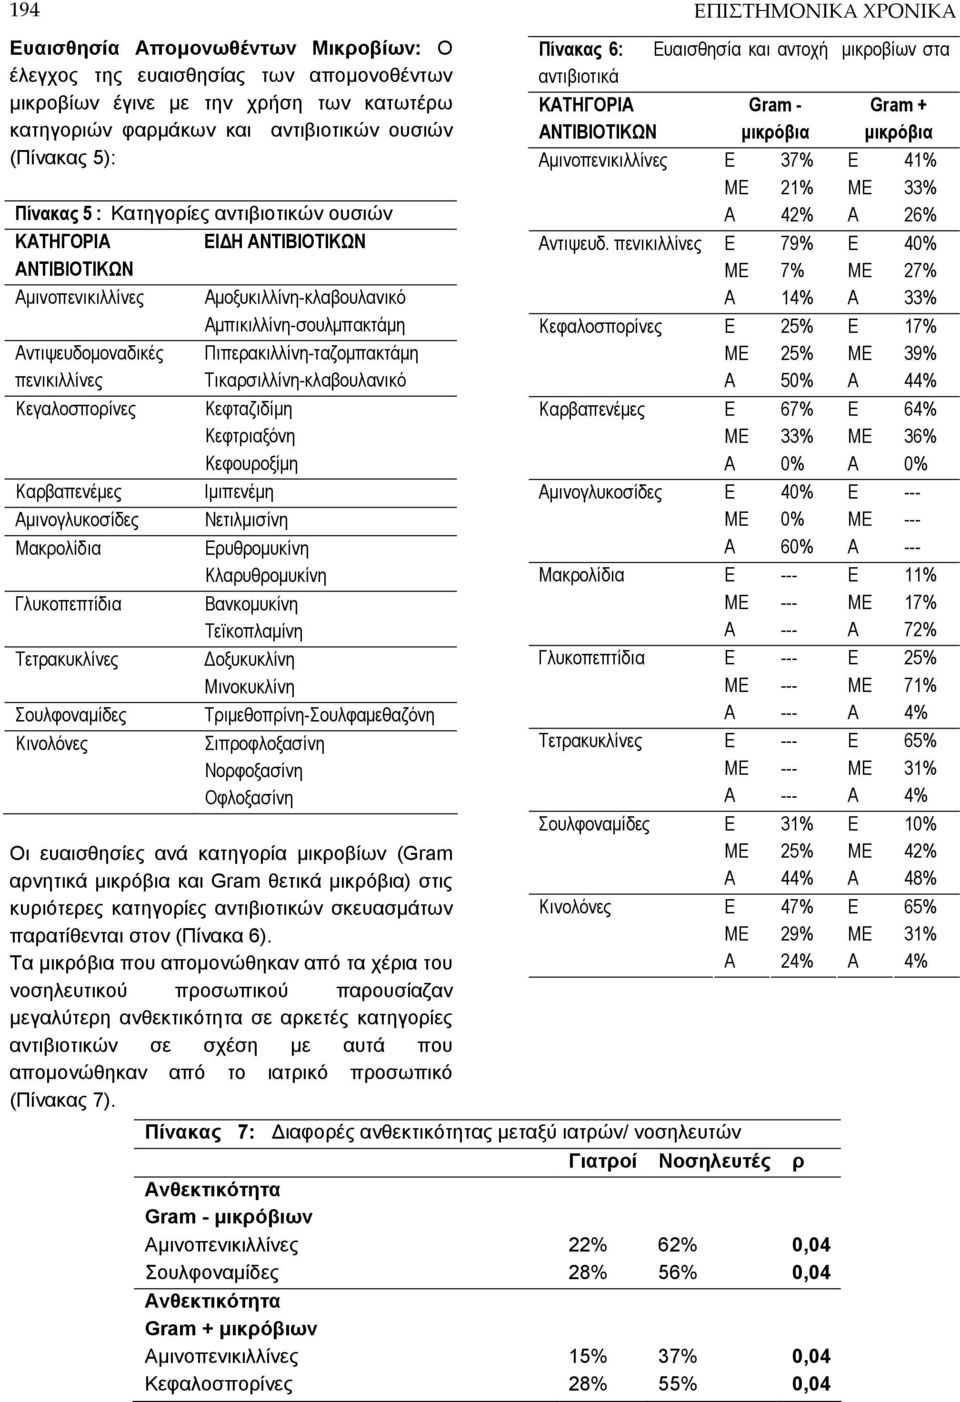 Καρβαπενέμες Αμινογλυκοσίδες Μακρολίδια Γλυκοπεπτίδια Τετρακυκλίνες Σουλφοναμίδες Κινολόνες Πιπερακιλλίνη-ταζομπακτάμη Τικαρσιλλίνη-κλαβουλανικό Κεφταζιδίμη Κεφτριαξόνη Κεφουροξίμη Ιμιπενέμη